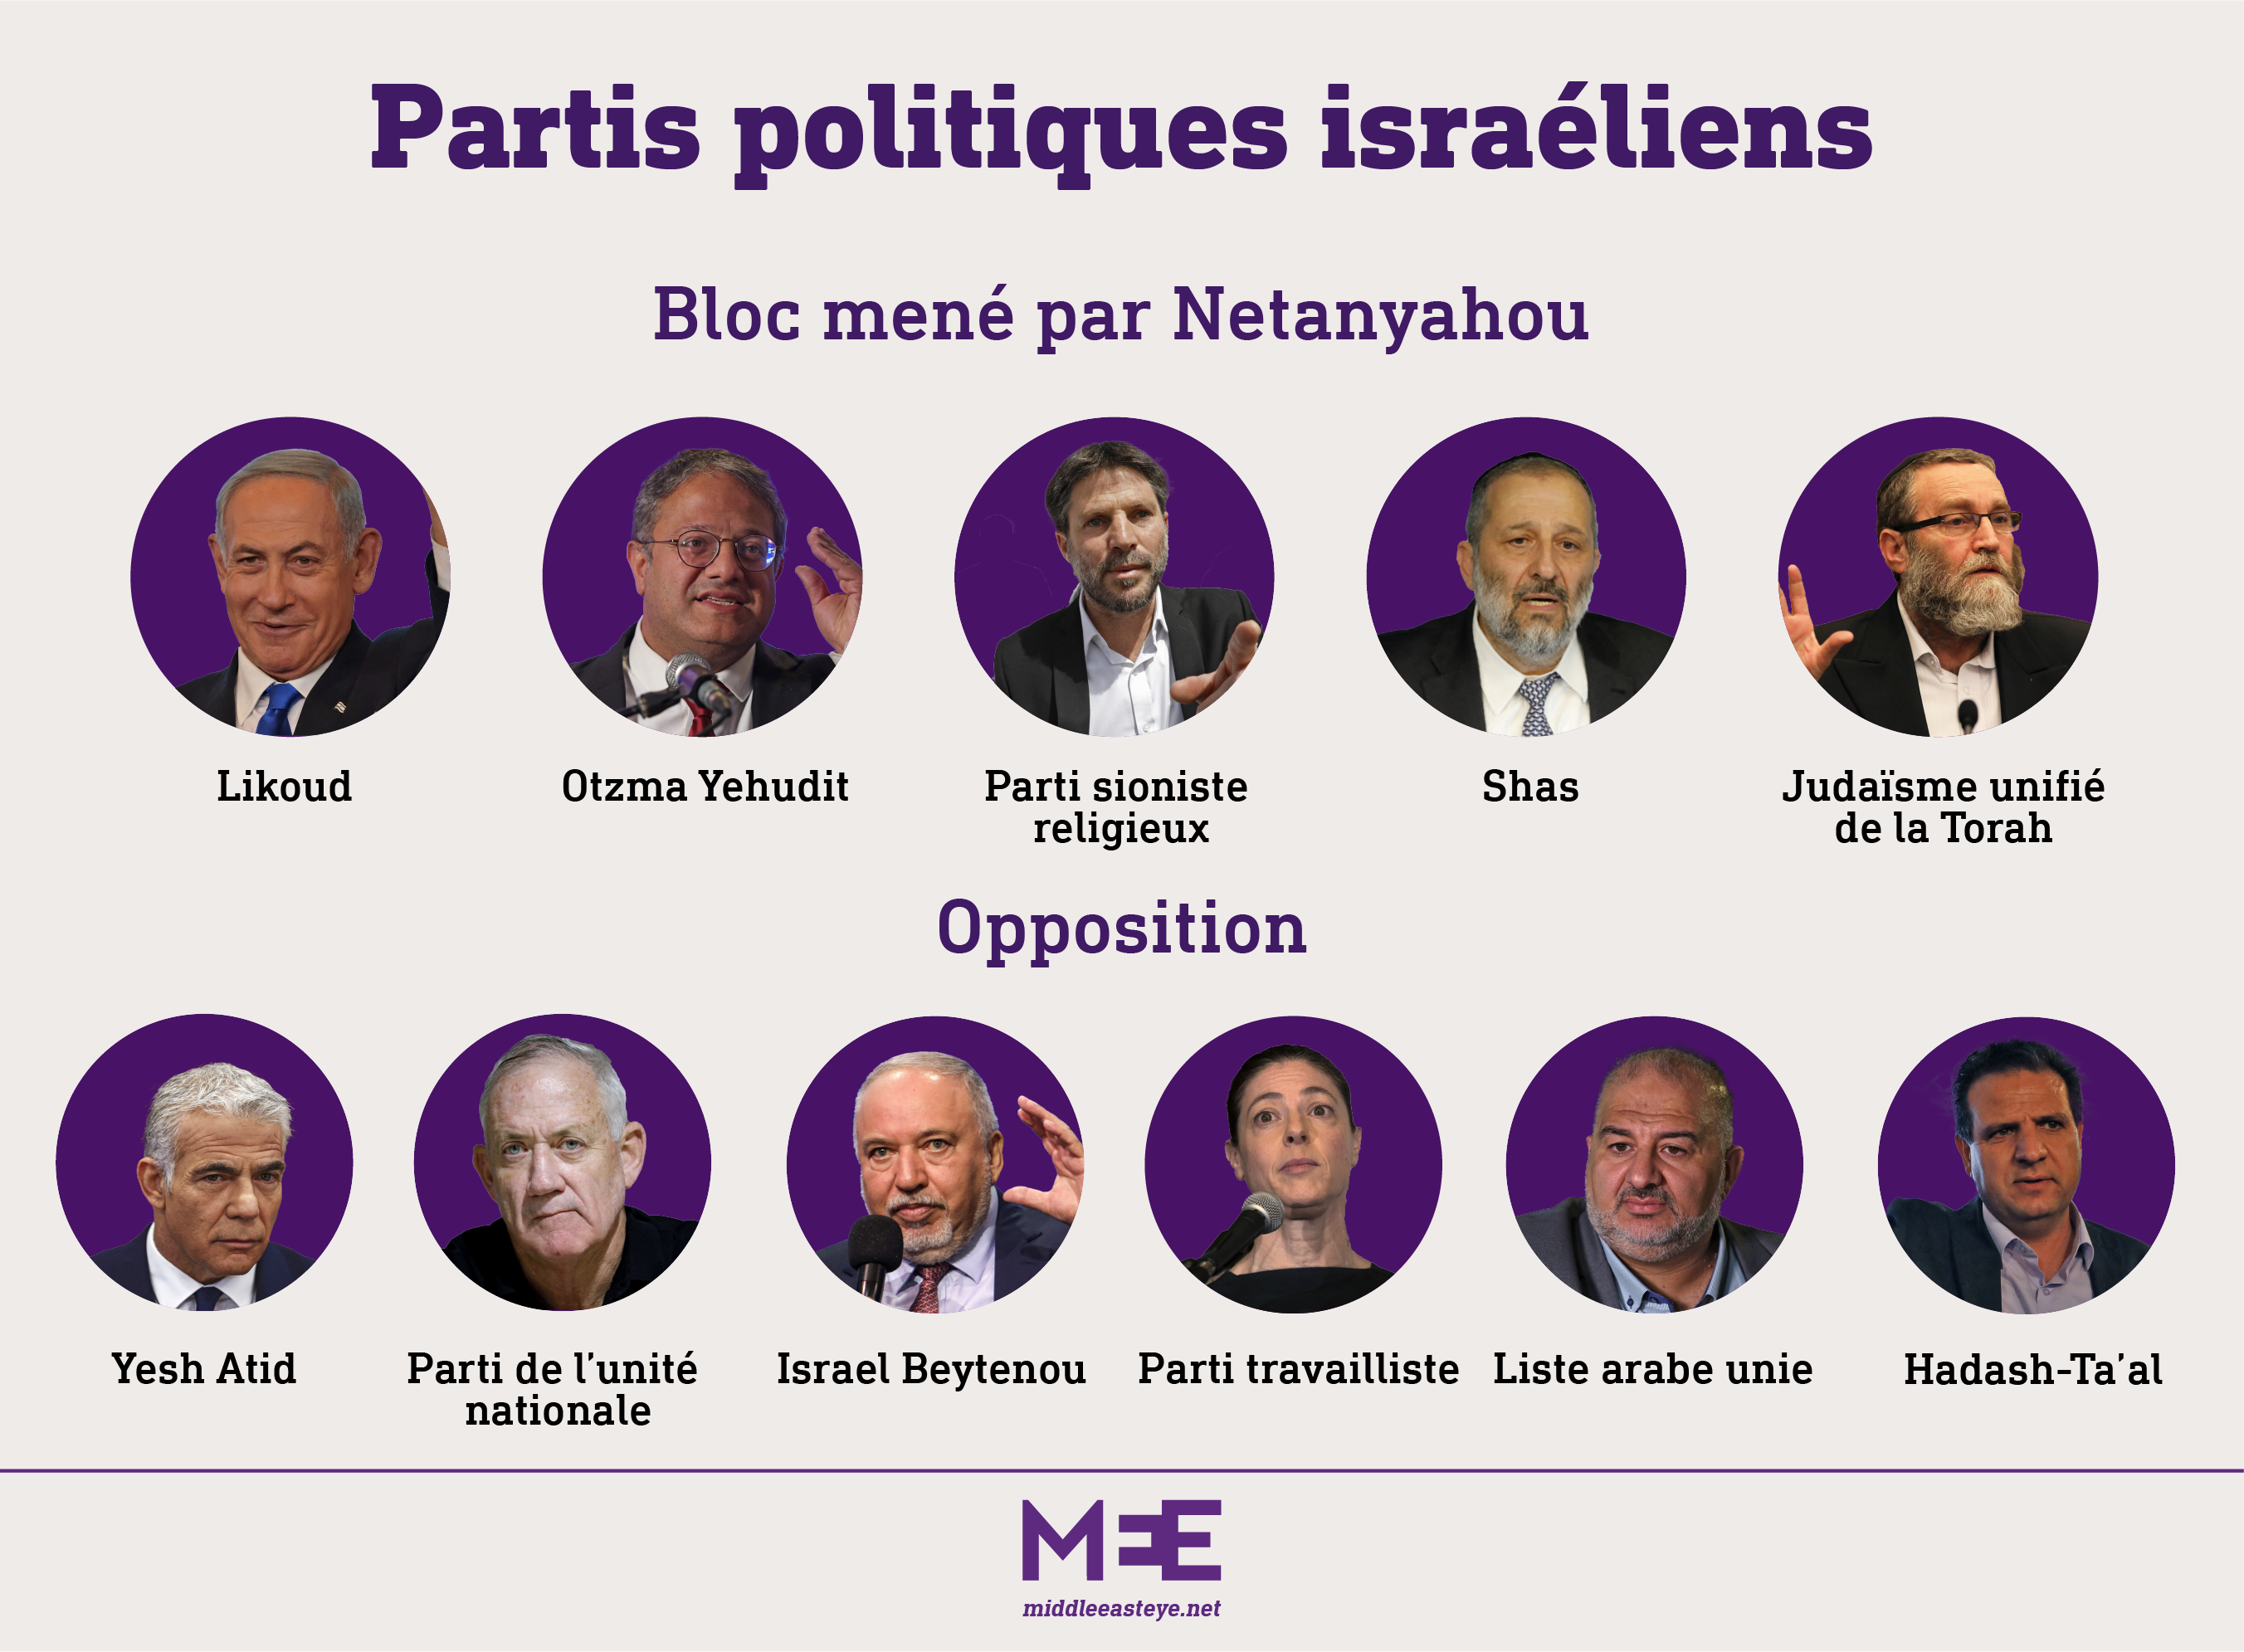 Les partis politiques israéliens